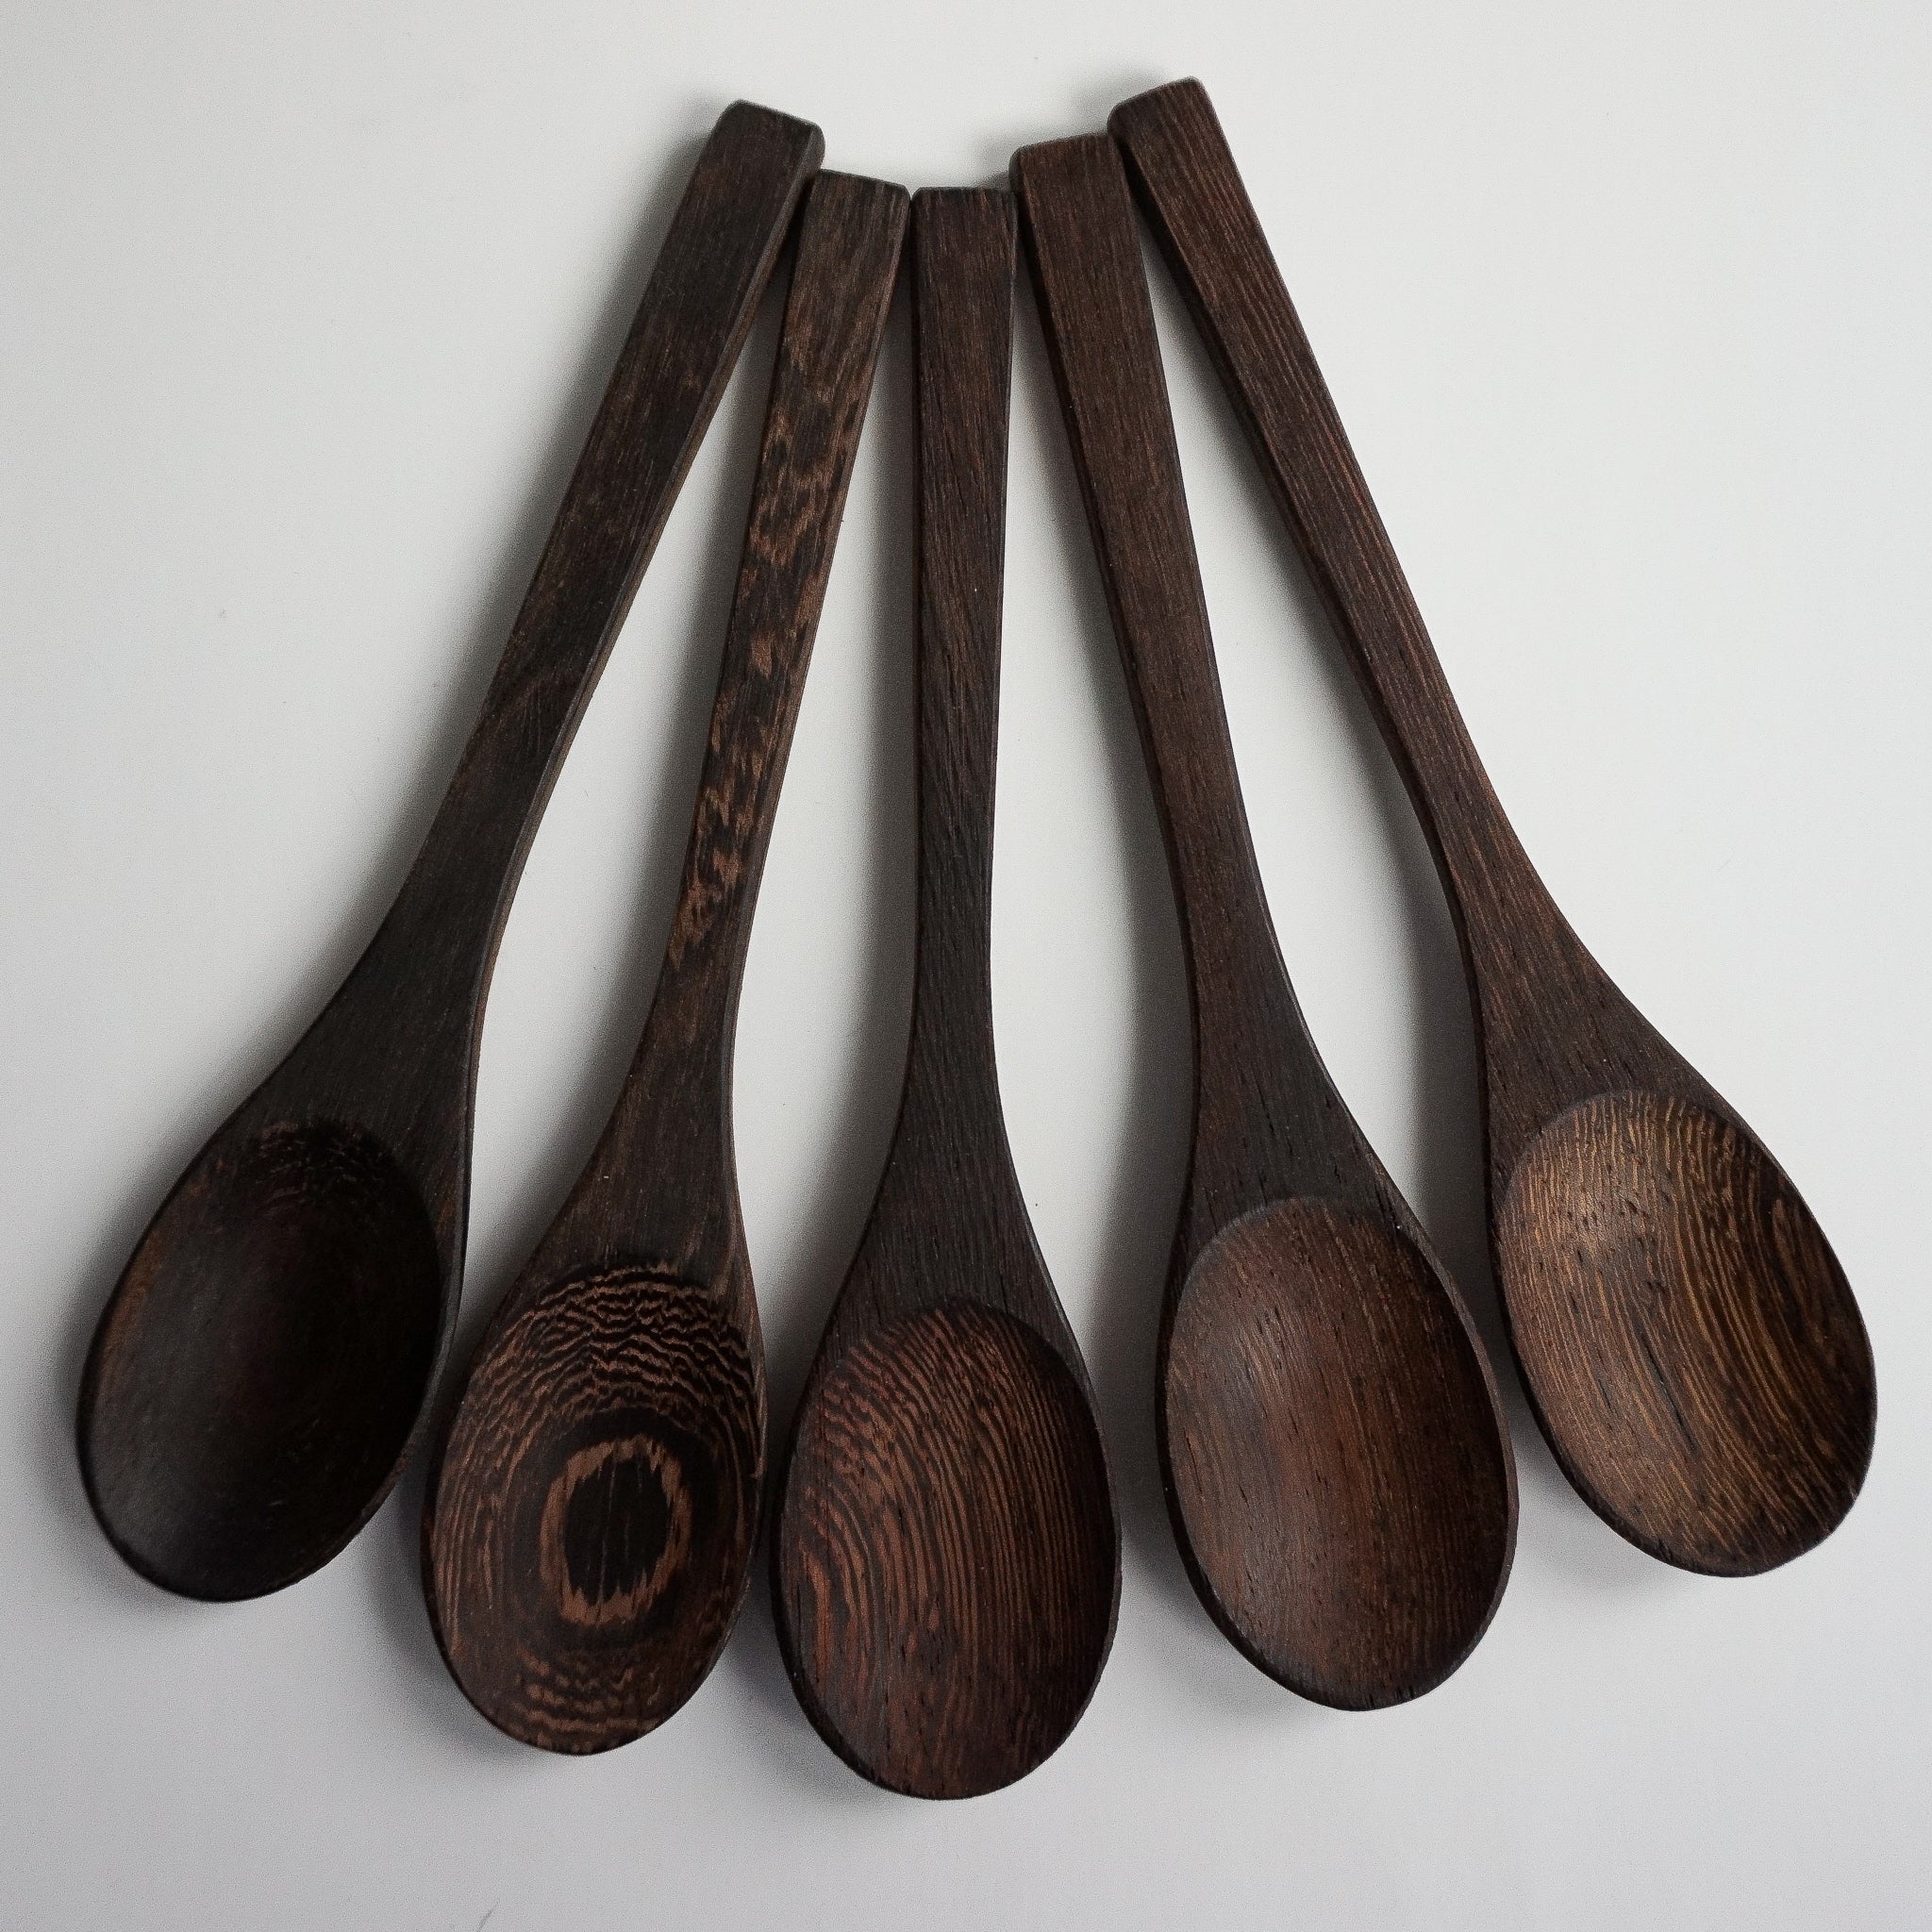 Wooden Spoons - 5 Units Pack||Cuillères en Bois – Paquet de 5 Unités